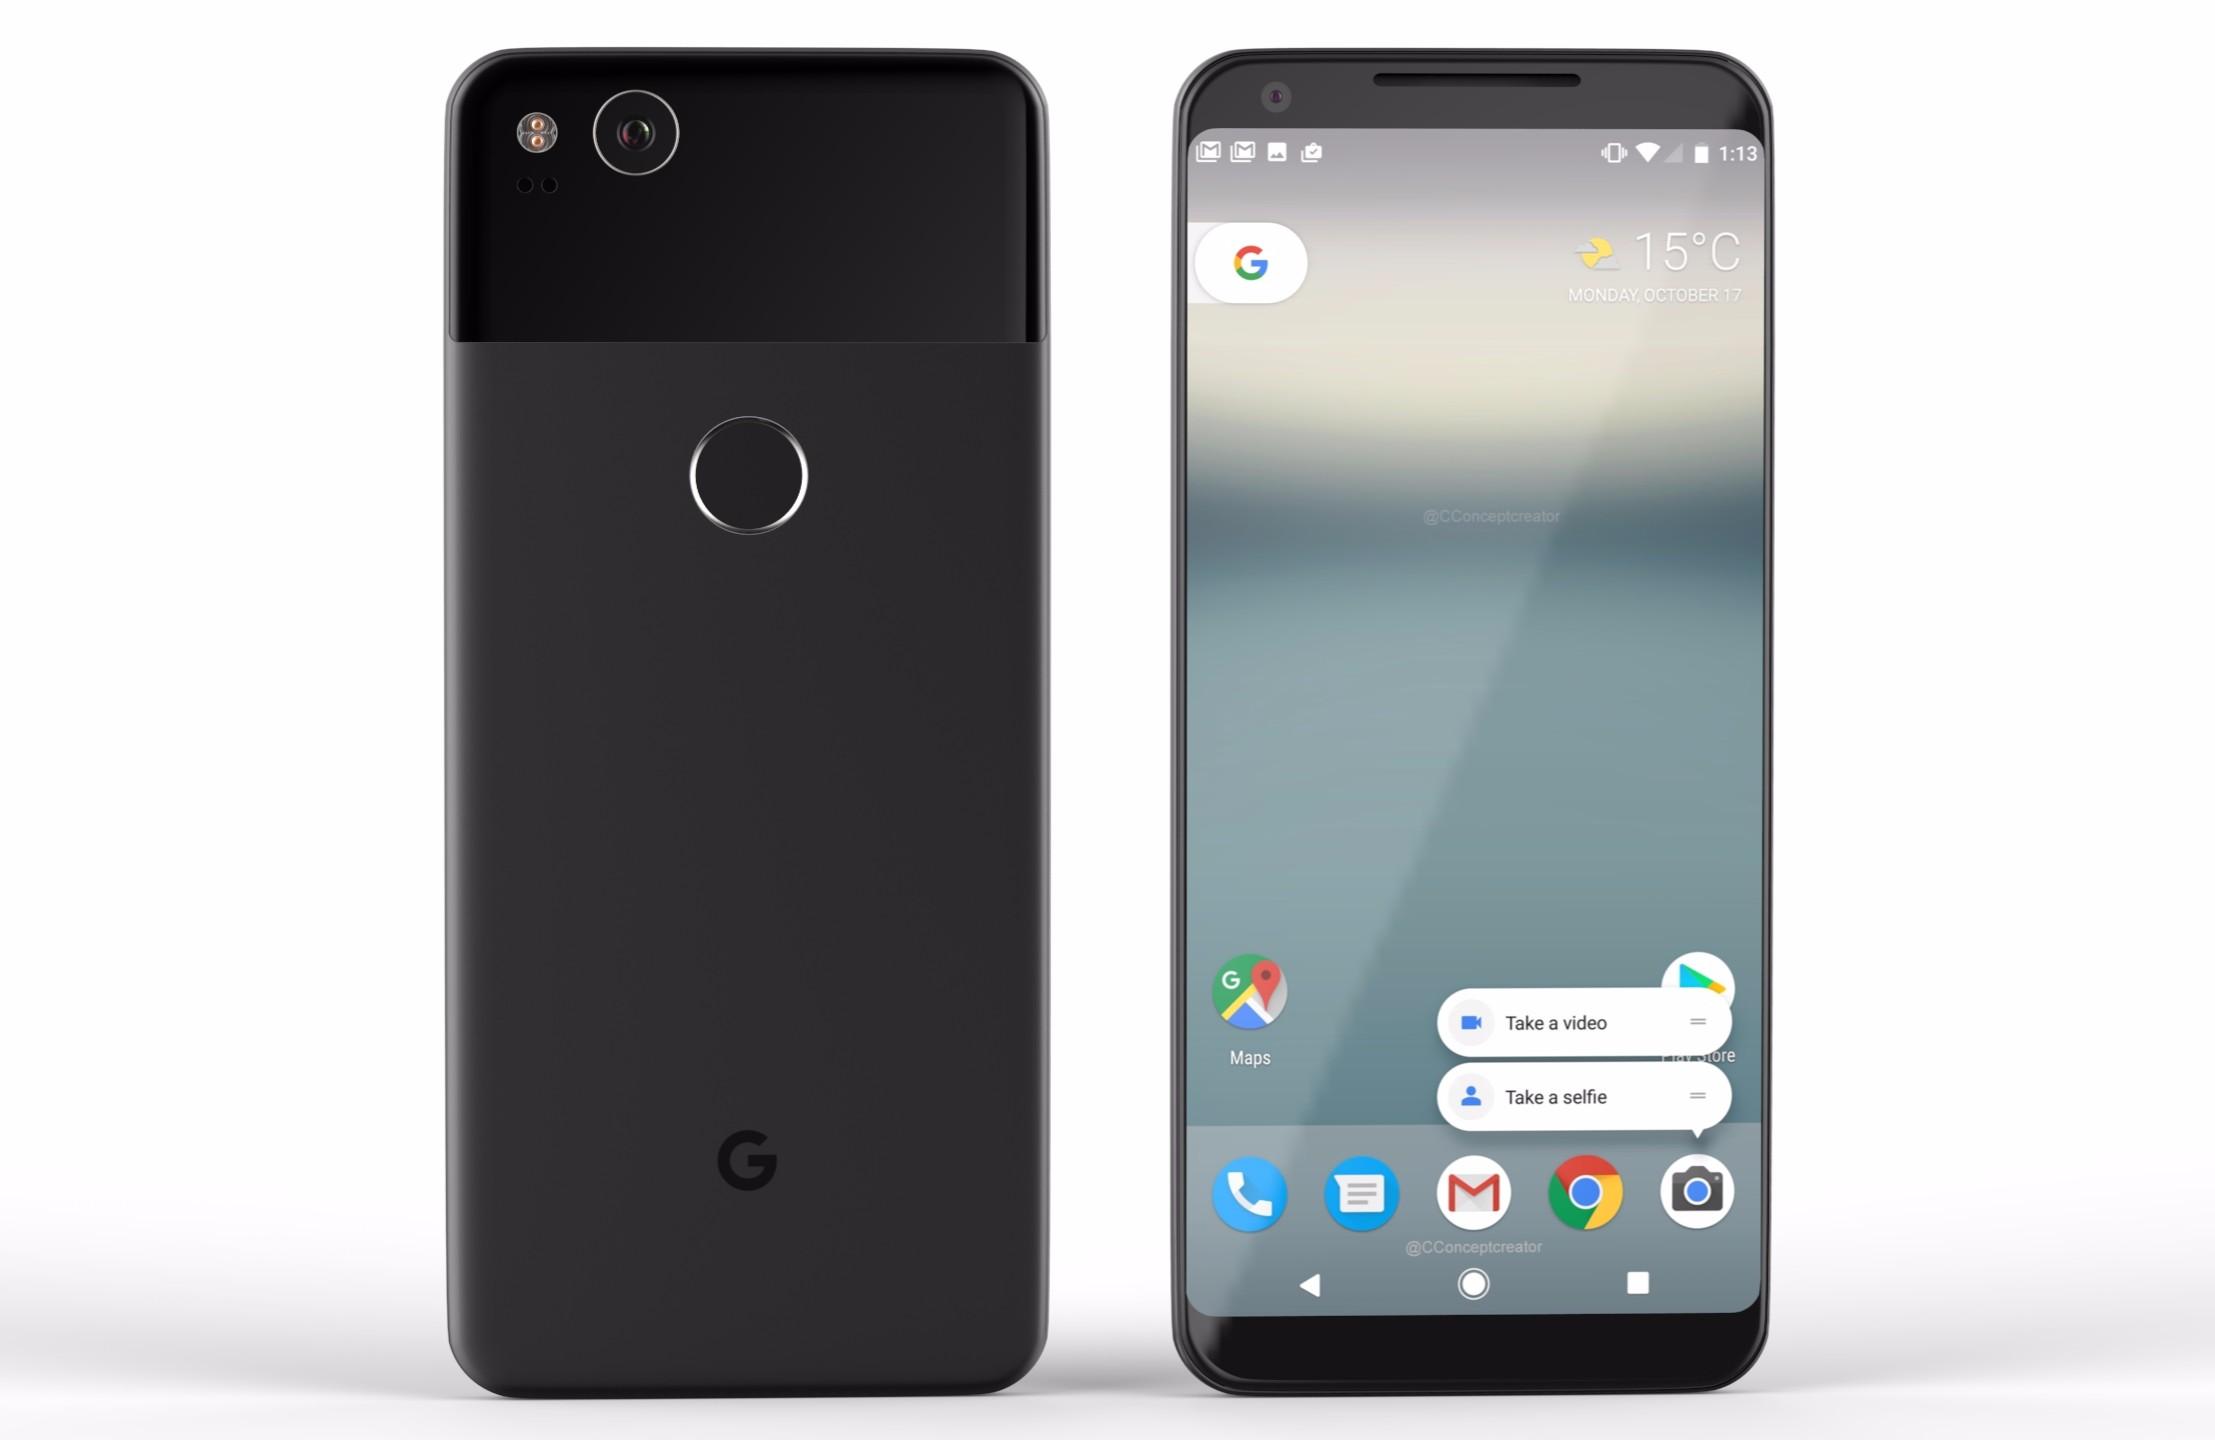 Google Pixel 2 and Pixel 2 XL Specs